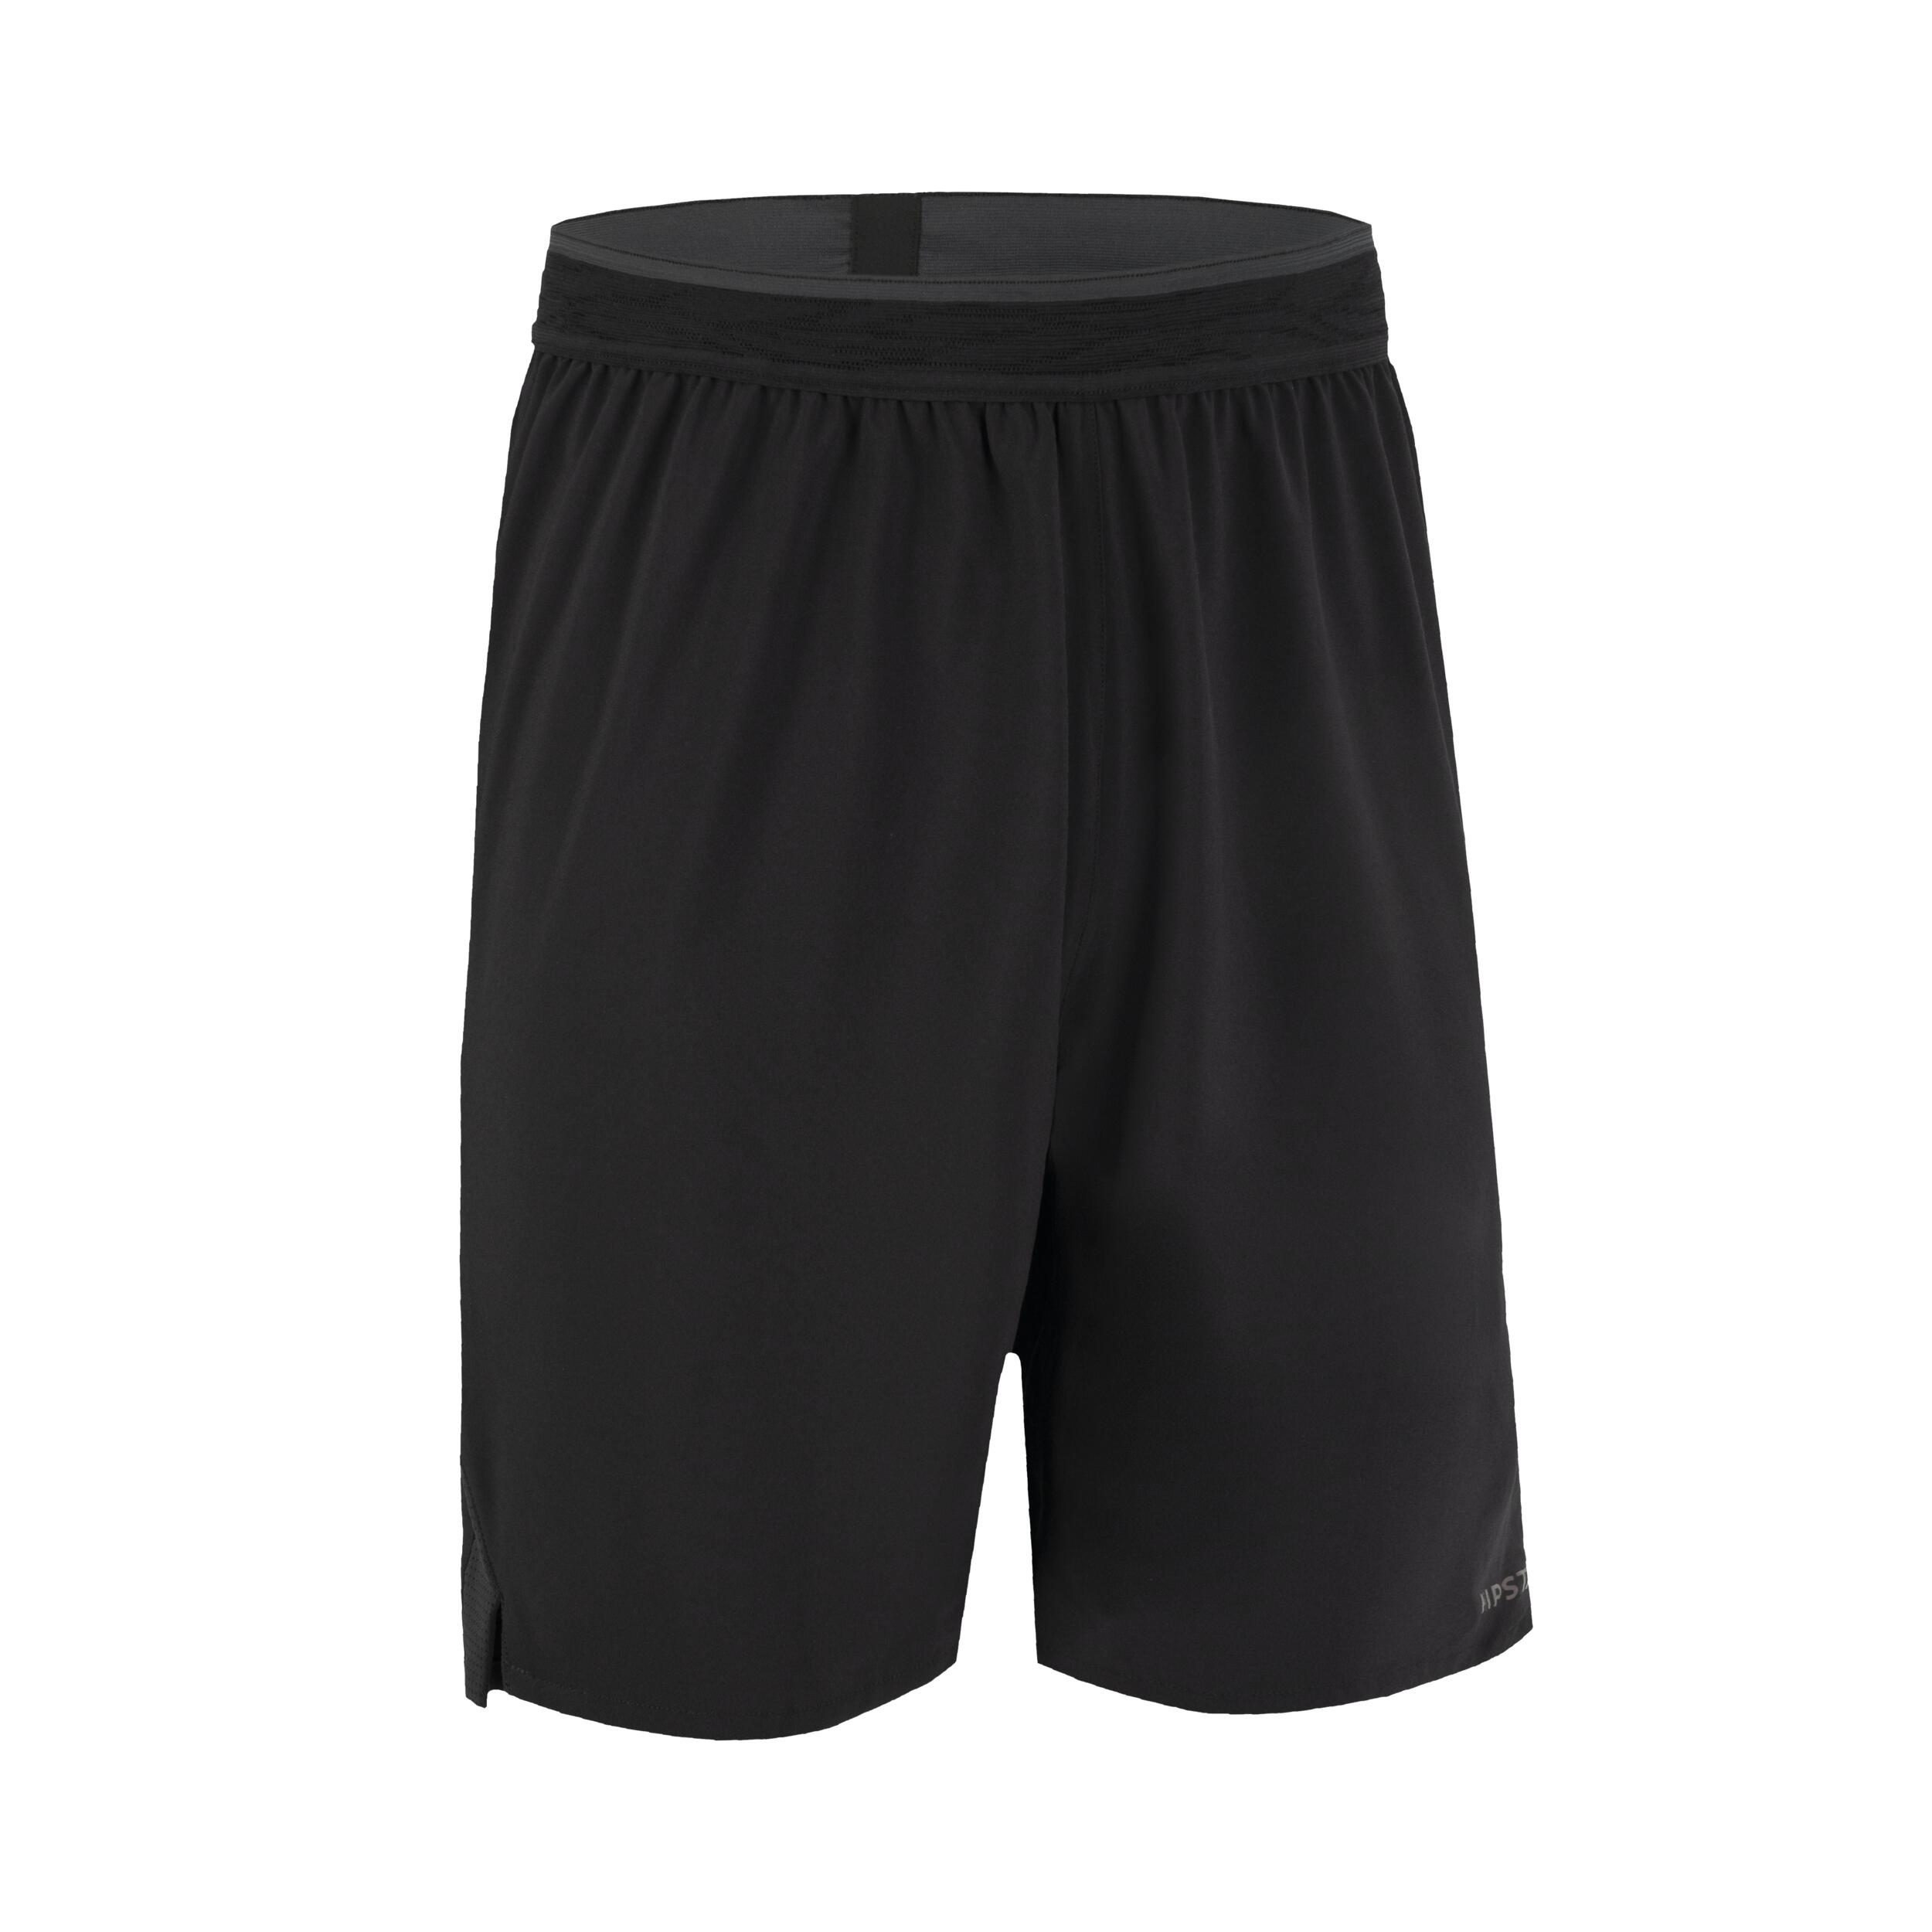 KIPSTA Adult Football Shorts CLR - Black